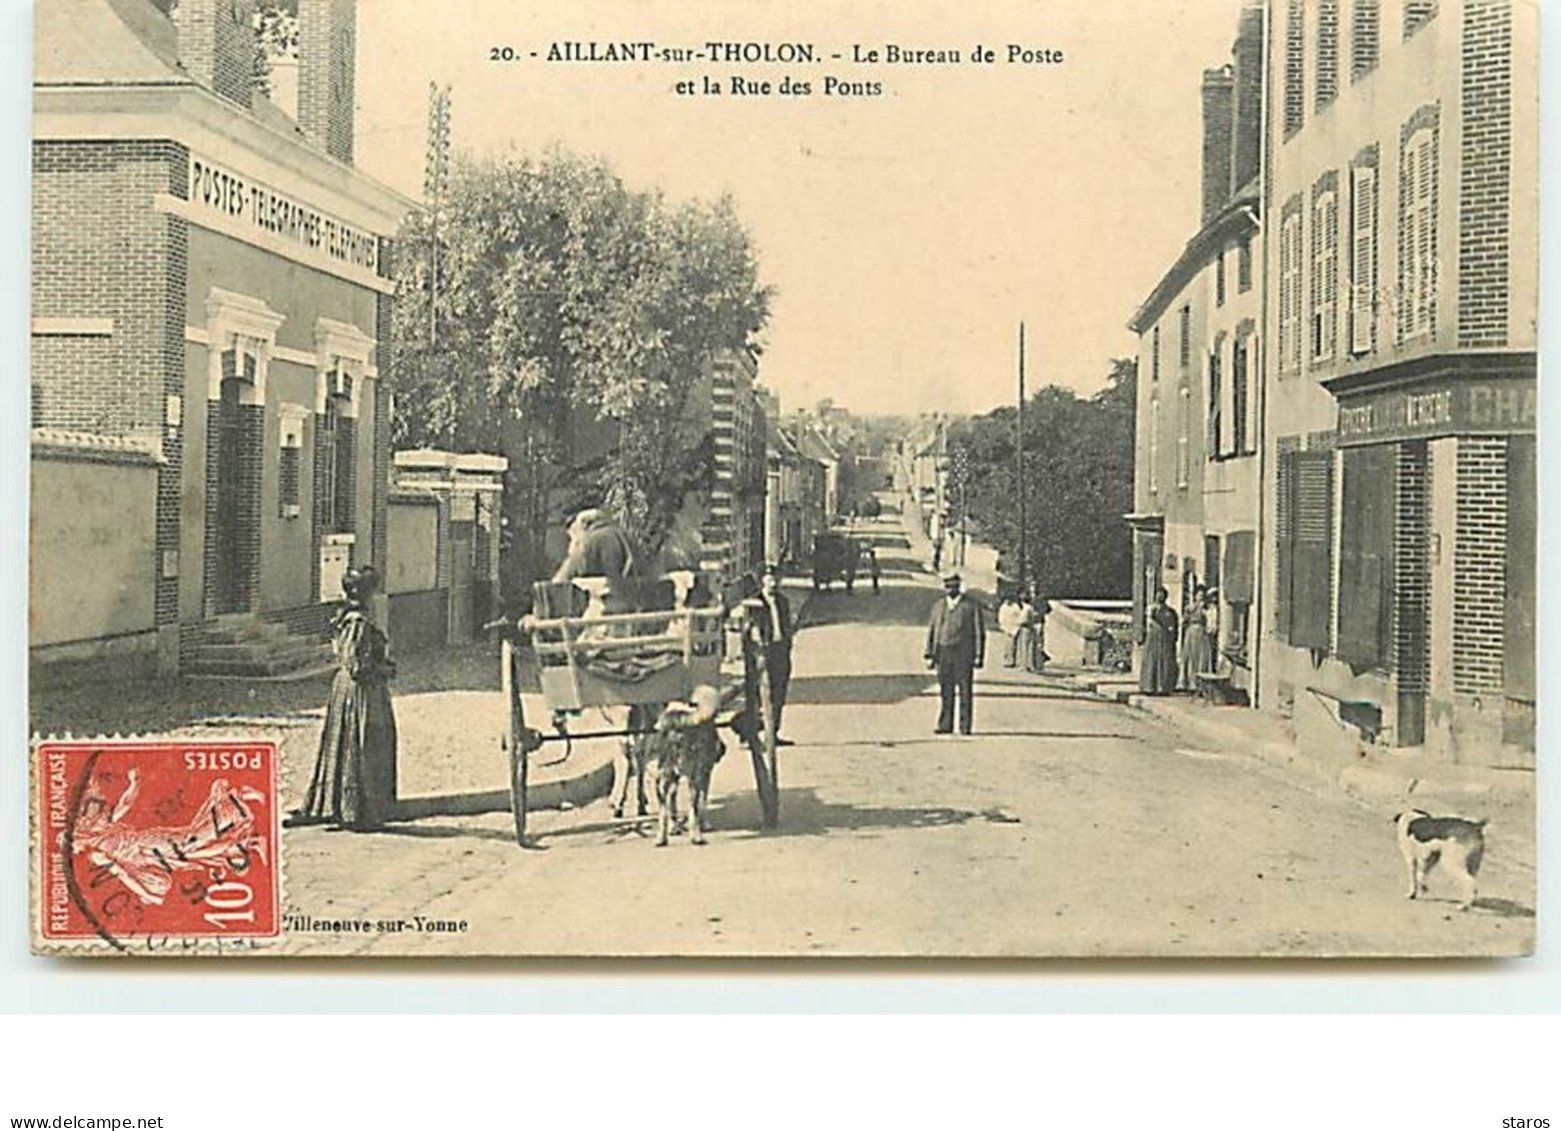 AILLANT-SUR-THOLON - Le Bureau De Poste Et La Rue Des Ponts - Aillant Sur Tholon